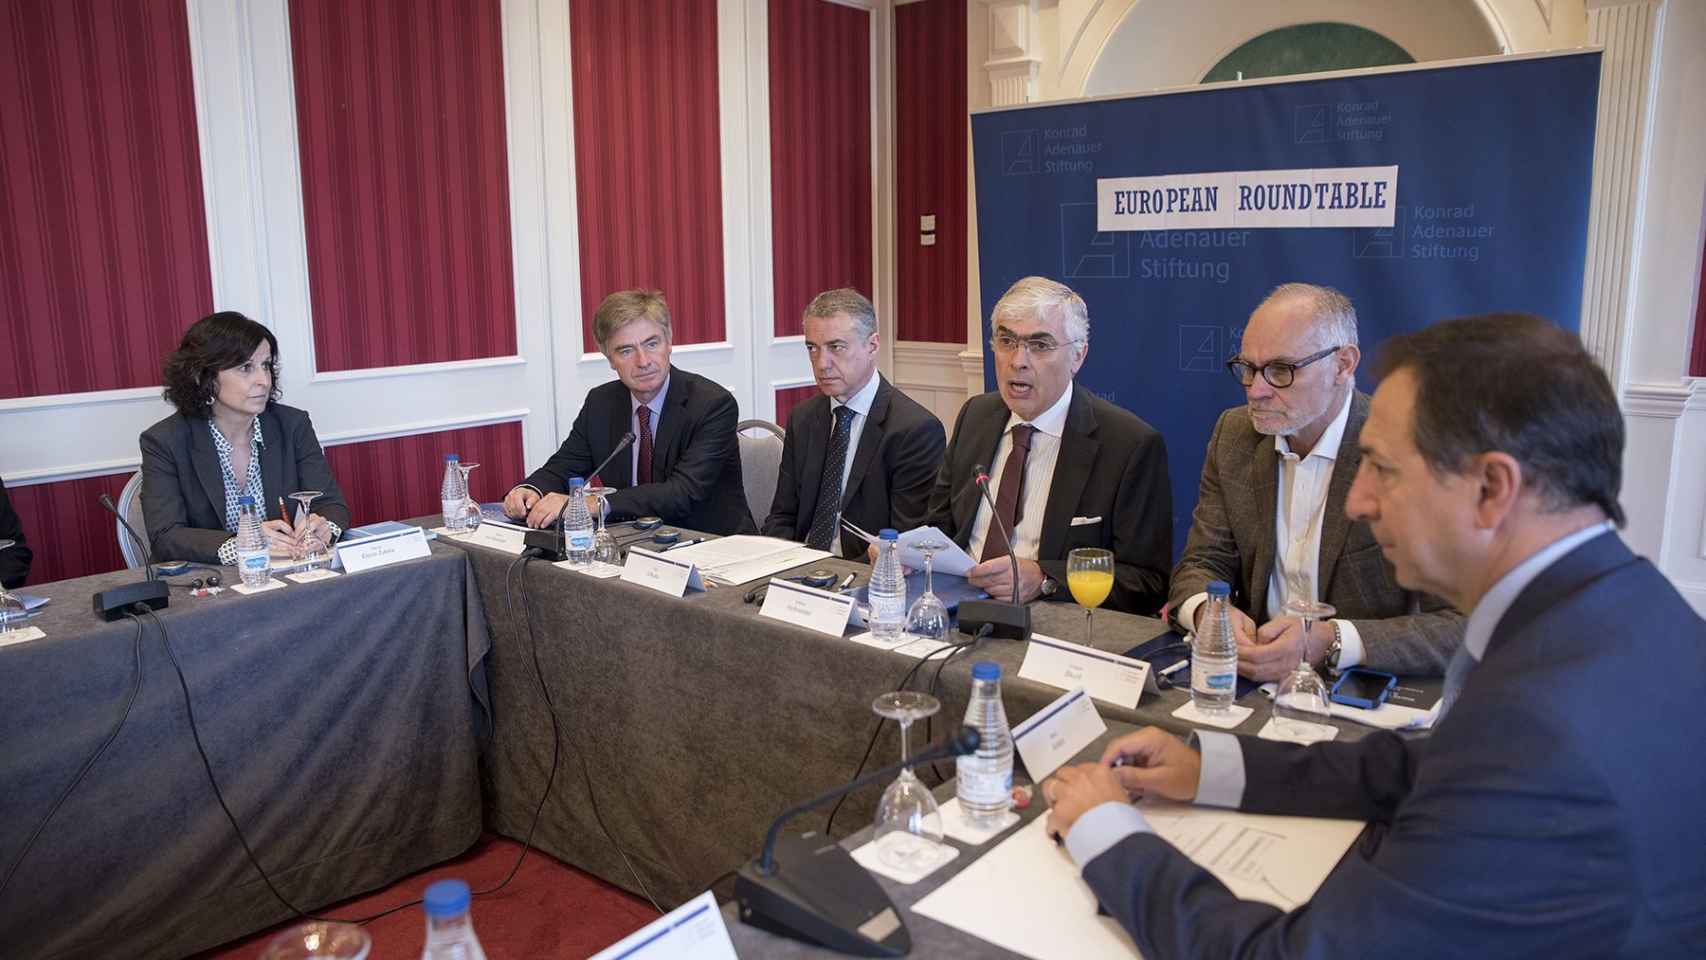 Wilhelm Hofmeister, en el centro de la imagen, junto a Íñigo Urkullu, en la inauguración de la European Roundtable 2016 que organiza la Fundación Konrad Adenauer